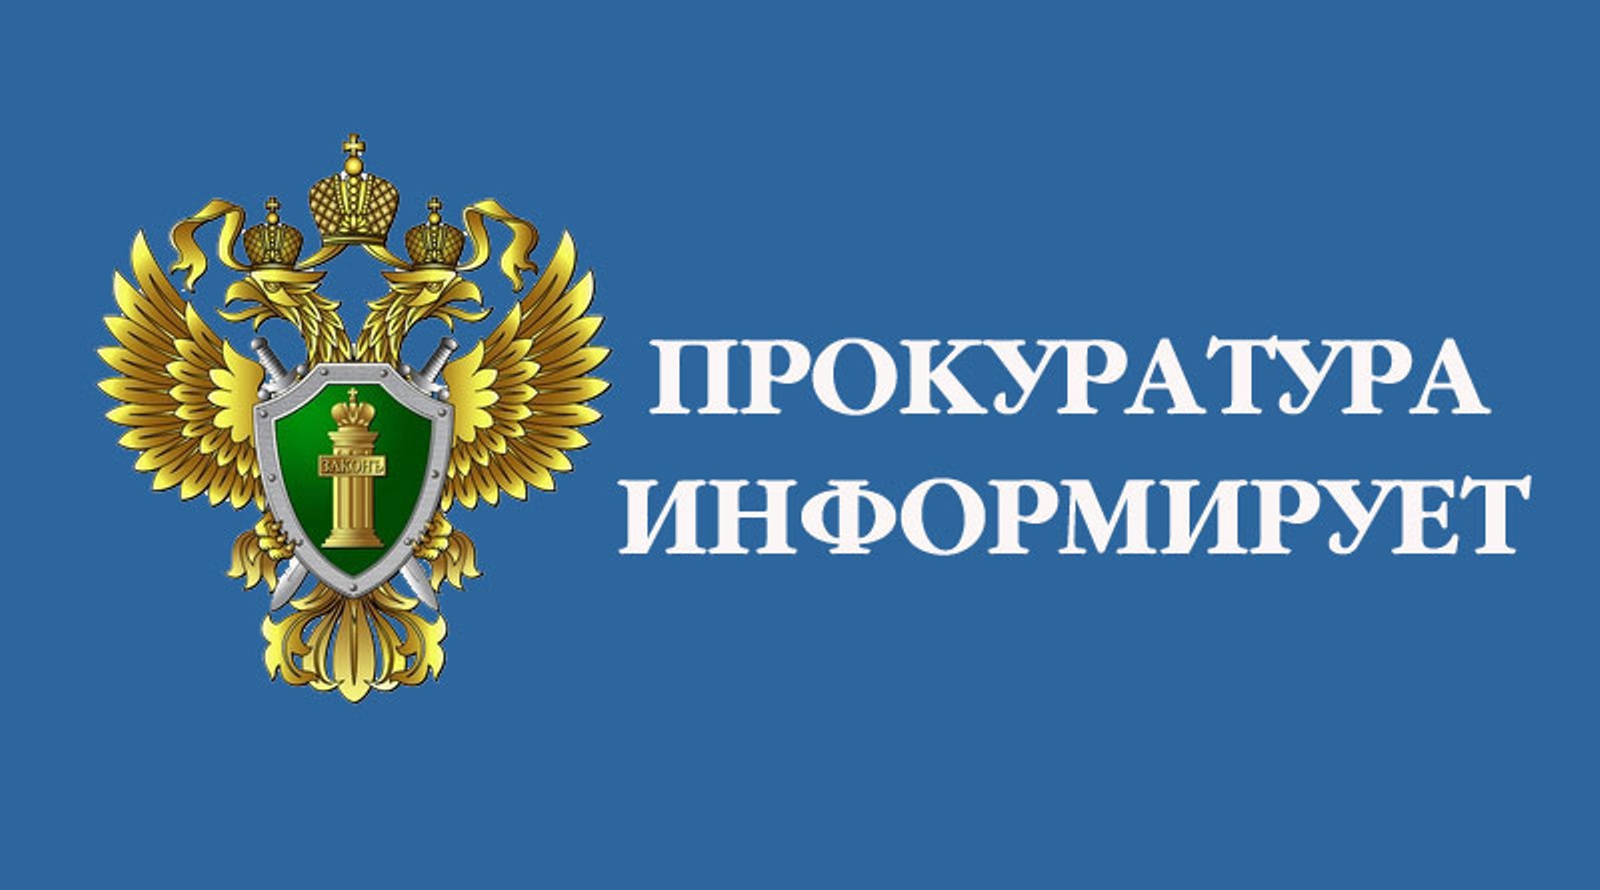 Прокуратурой Большеигнатовского района выявлены нарушения прав получателей социальных услуг.